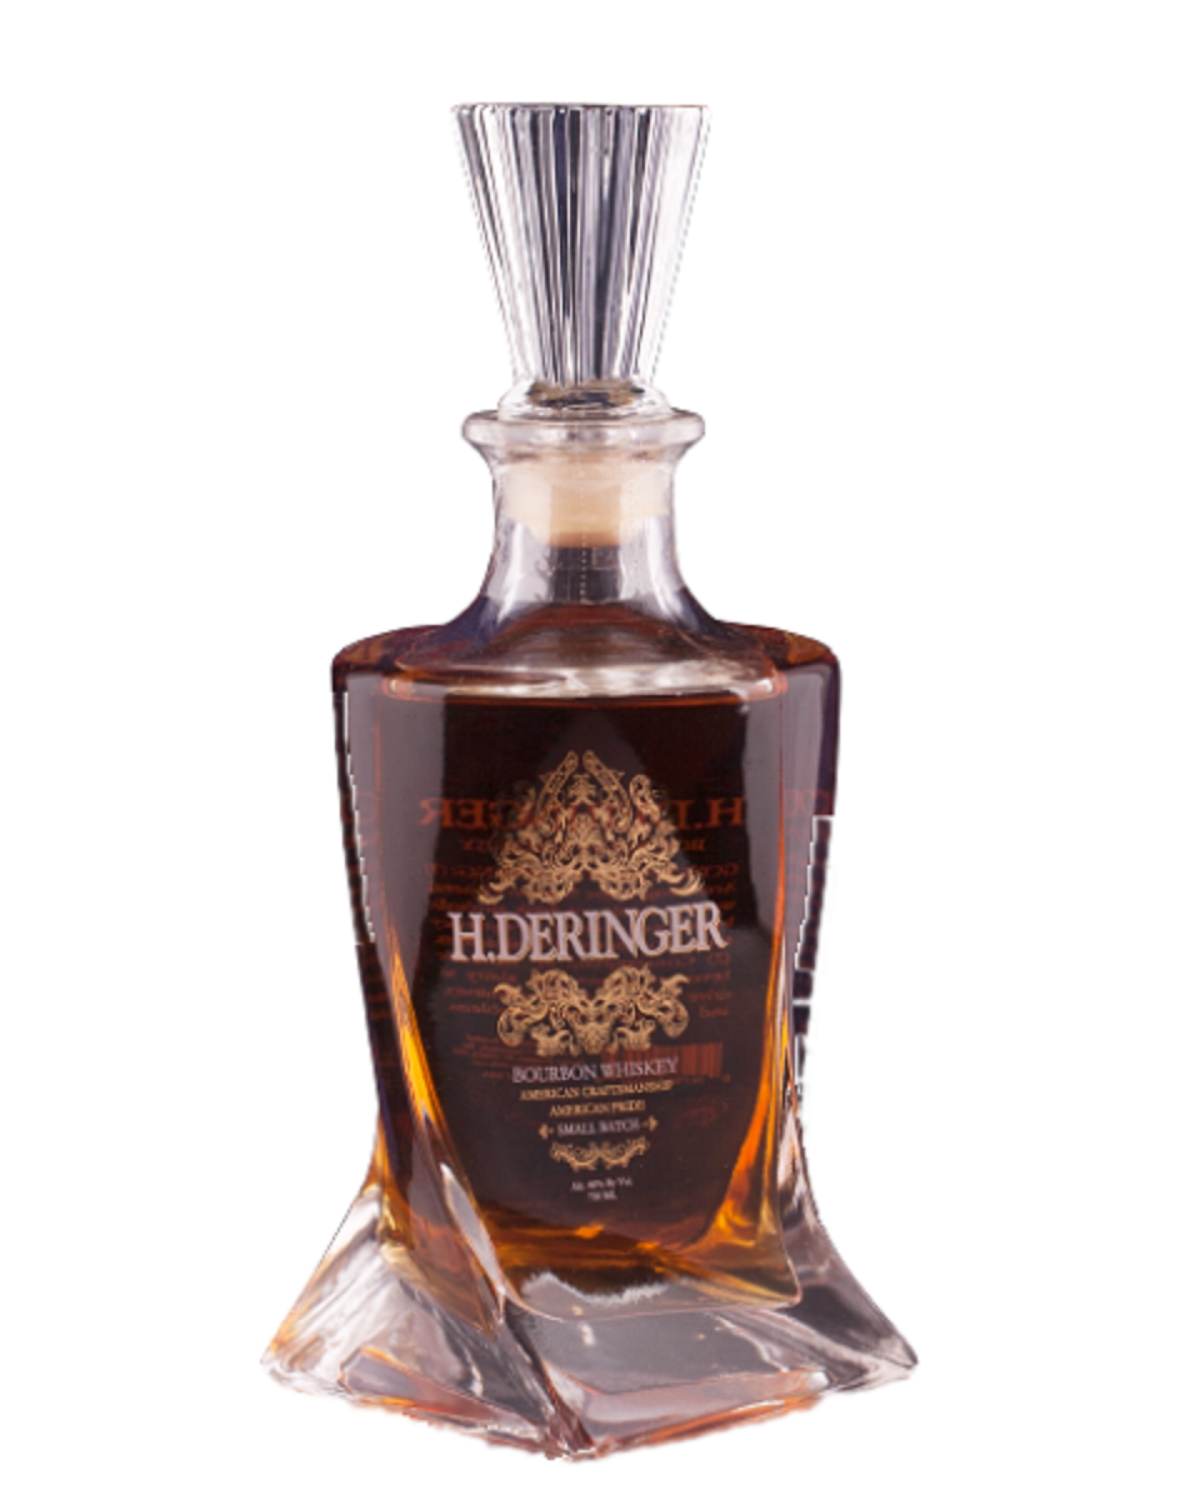 H.Deringer Bourbon Whiskey